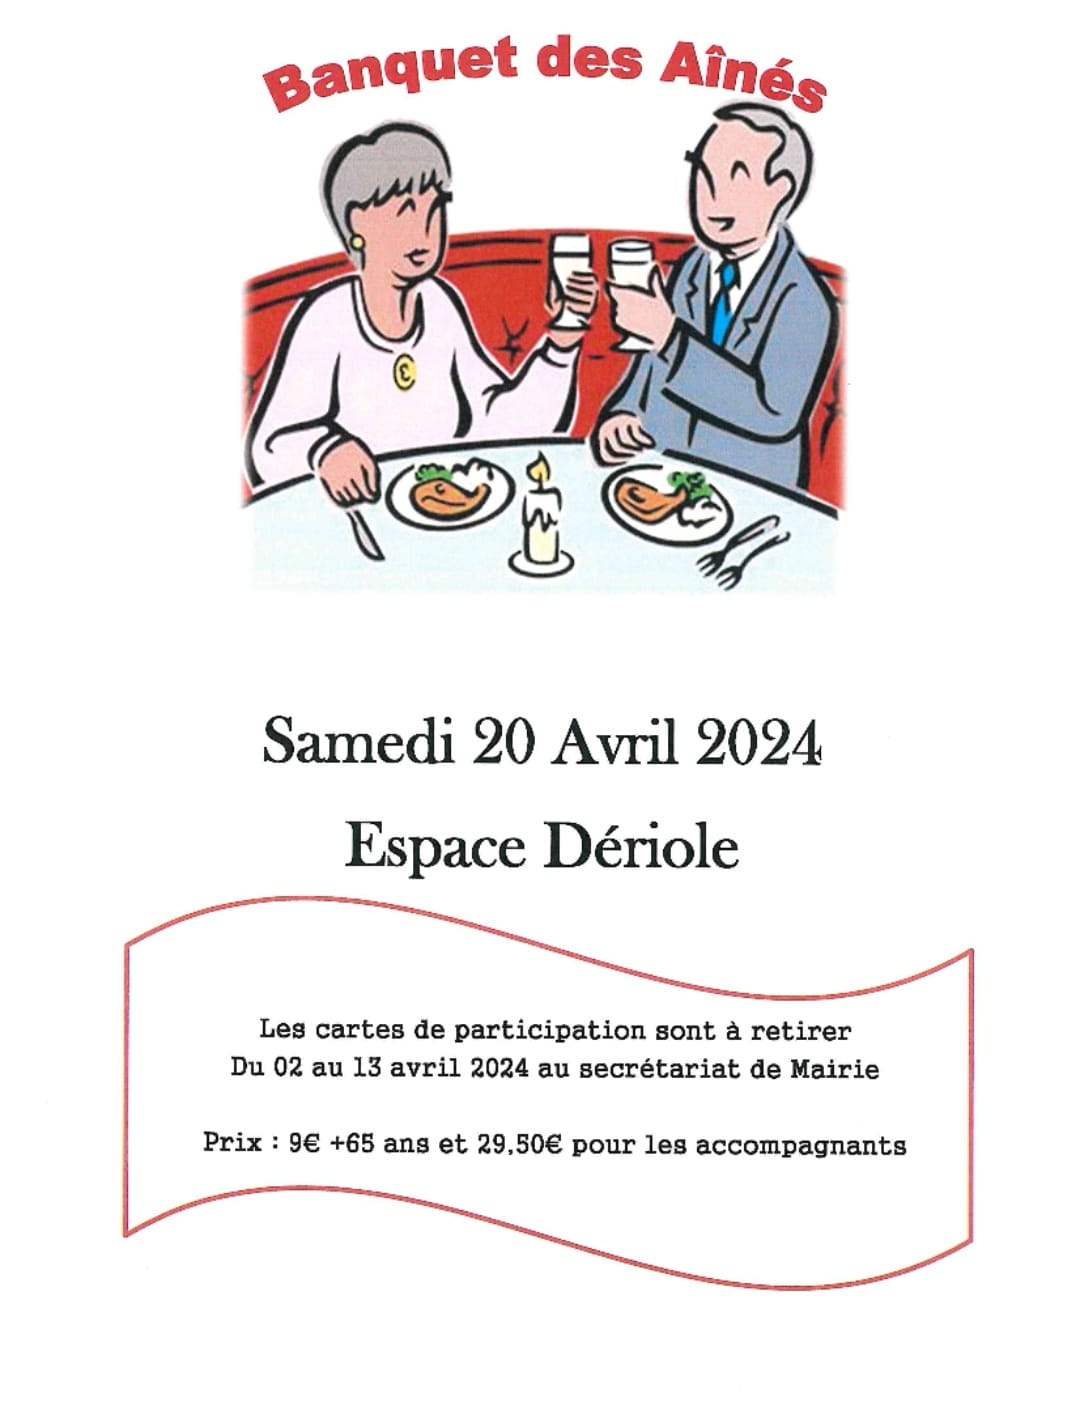 “Le Banquet des Aînés”, le samedi 20 avril 2024